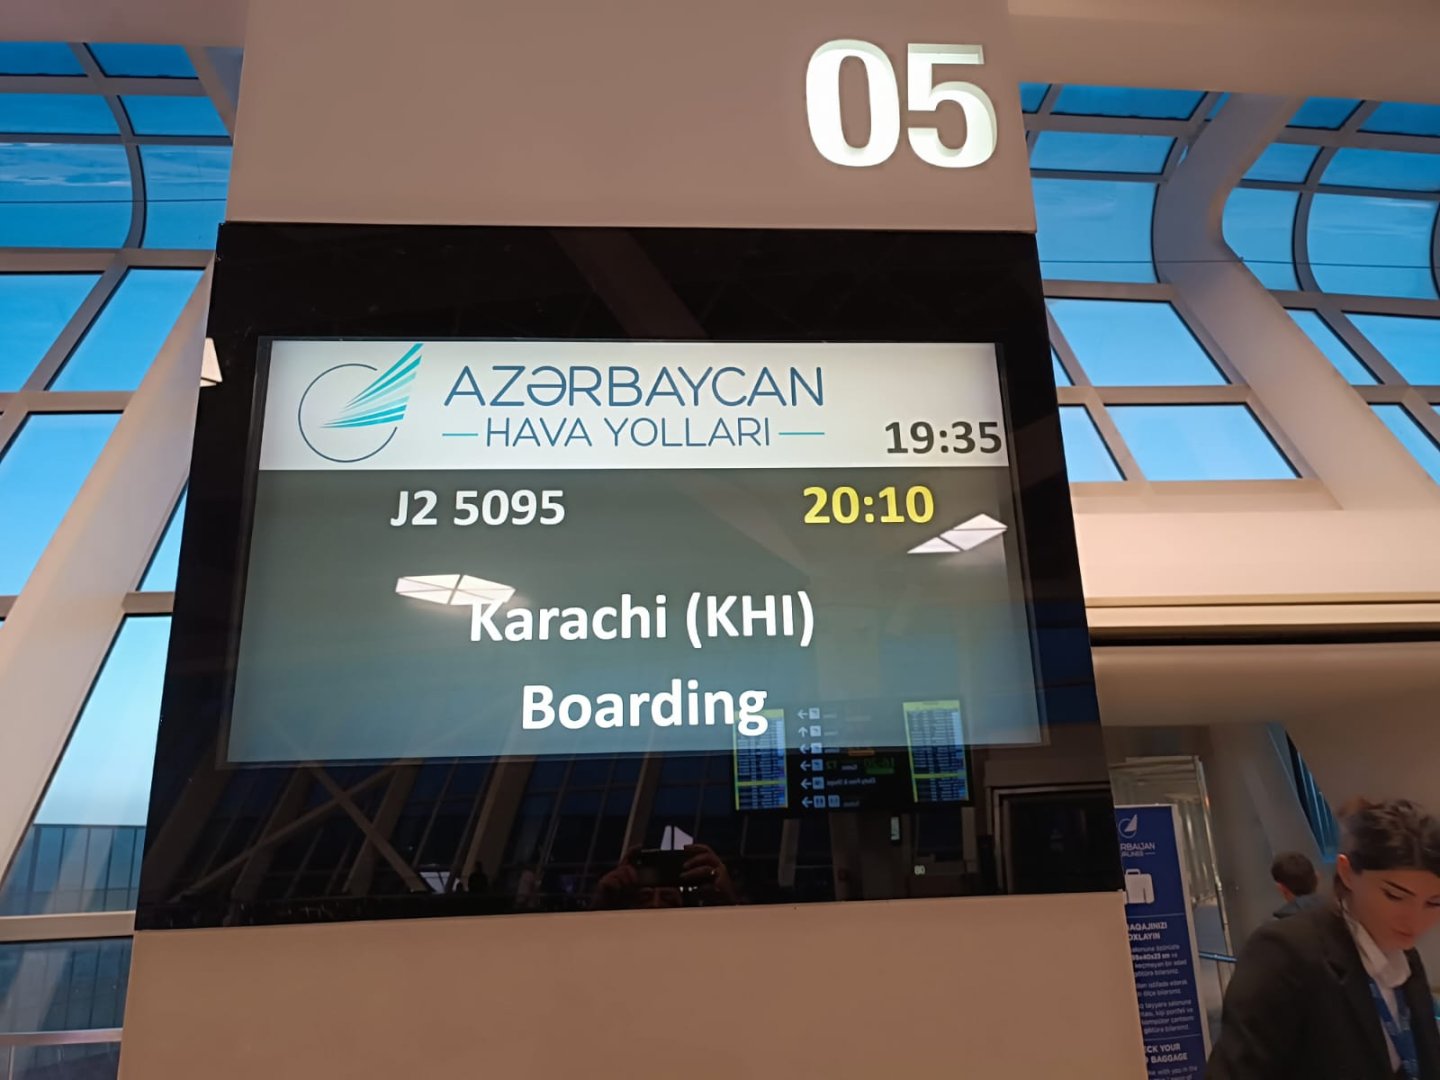 AZAL Bakı-Kəraçi marşrutu üzrə ilk uçuşunu həyata keçirib (FOTO)